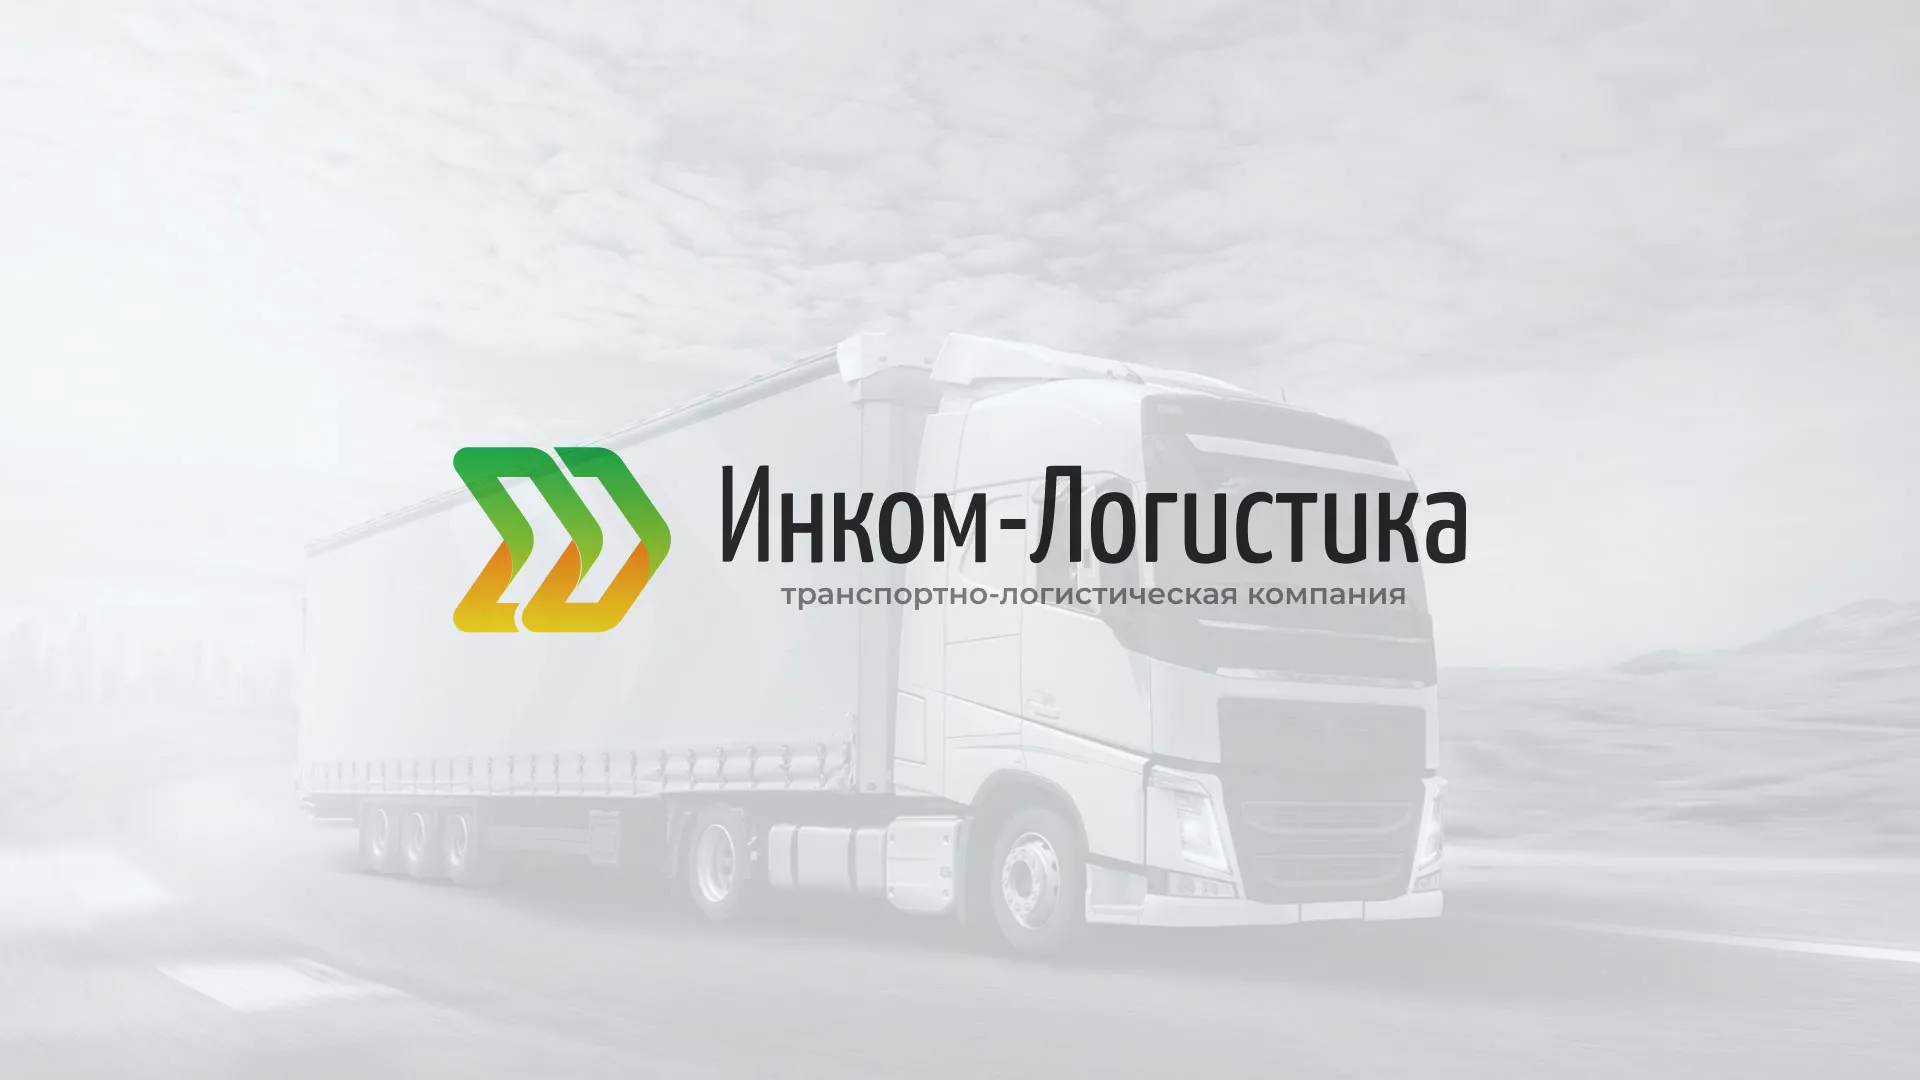 Разработка логотипа и сайта компании «Инком-Логистика» в Подольске